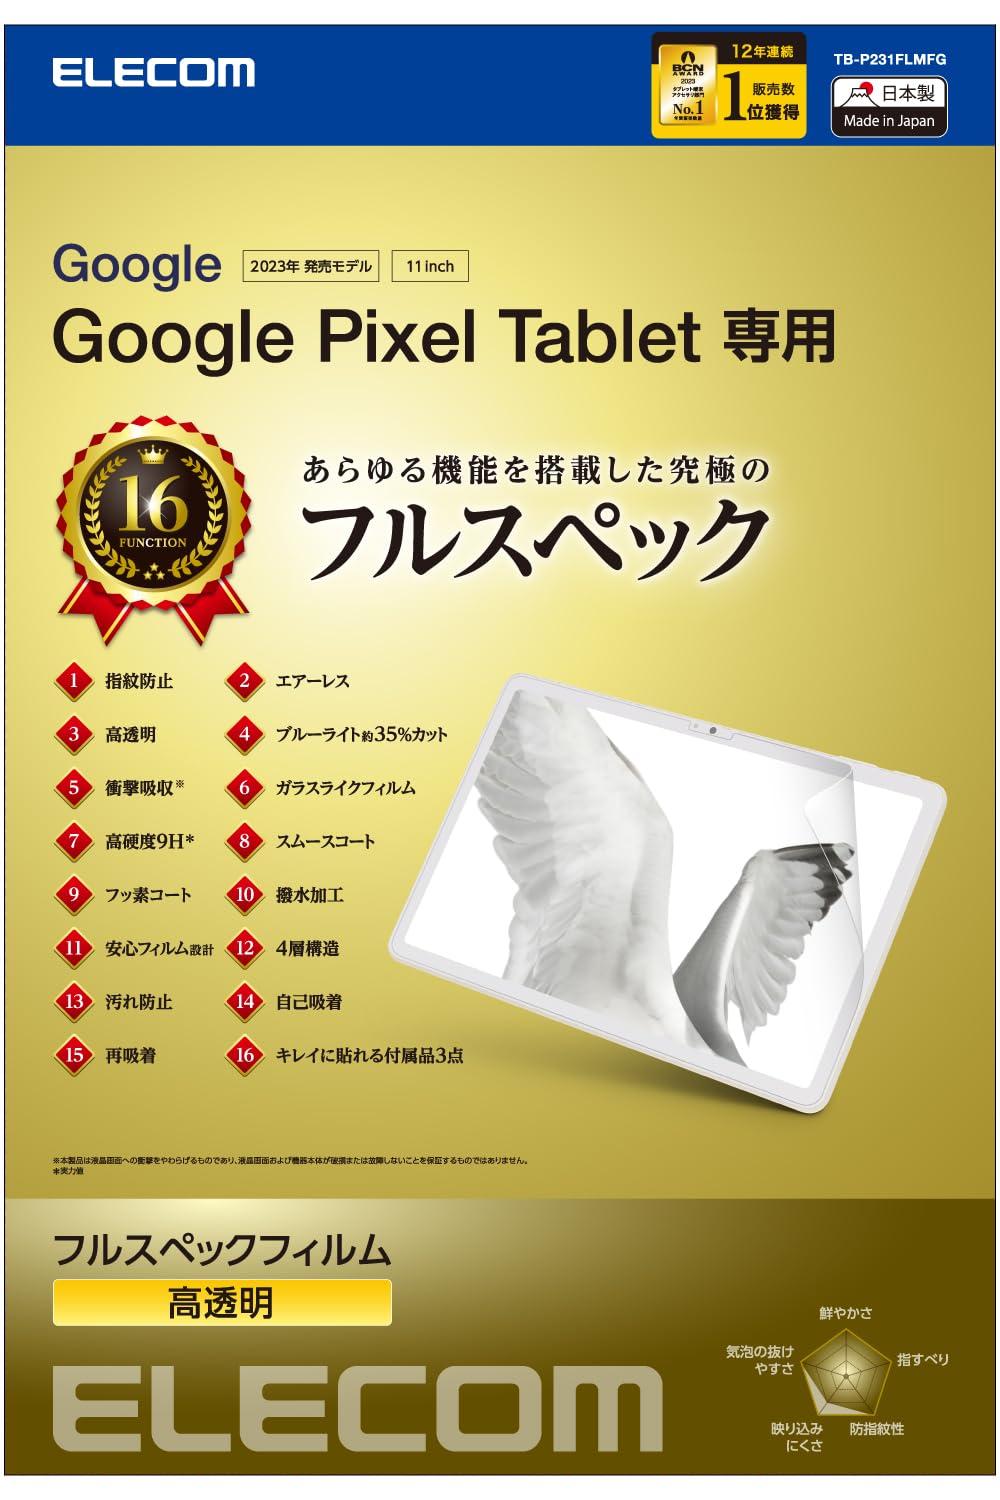 Google Pixel Tablet/tXybNtB/Ռz(TB-P231FLMFG)